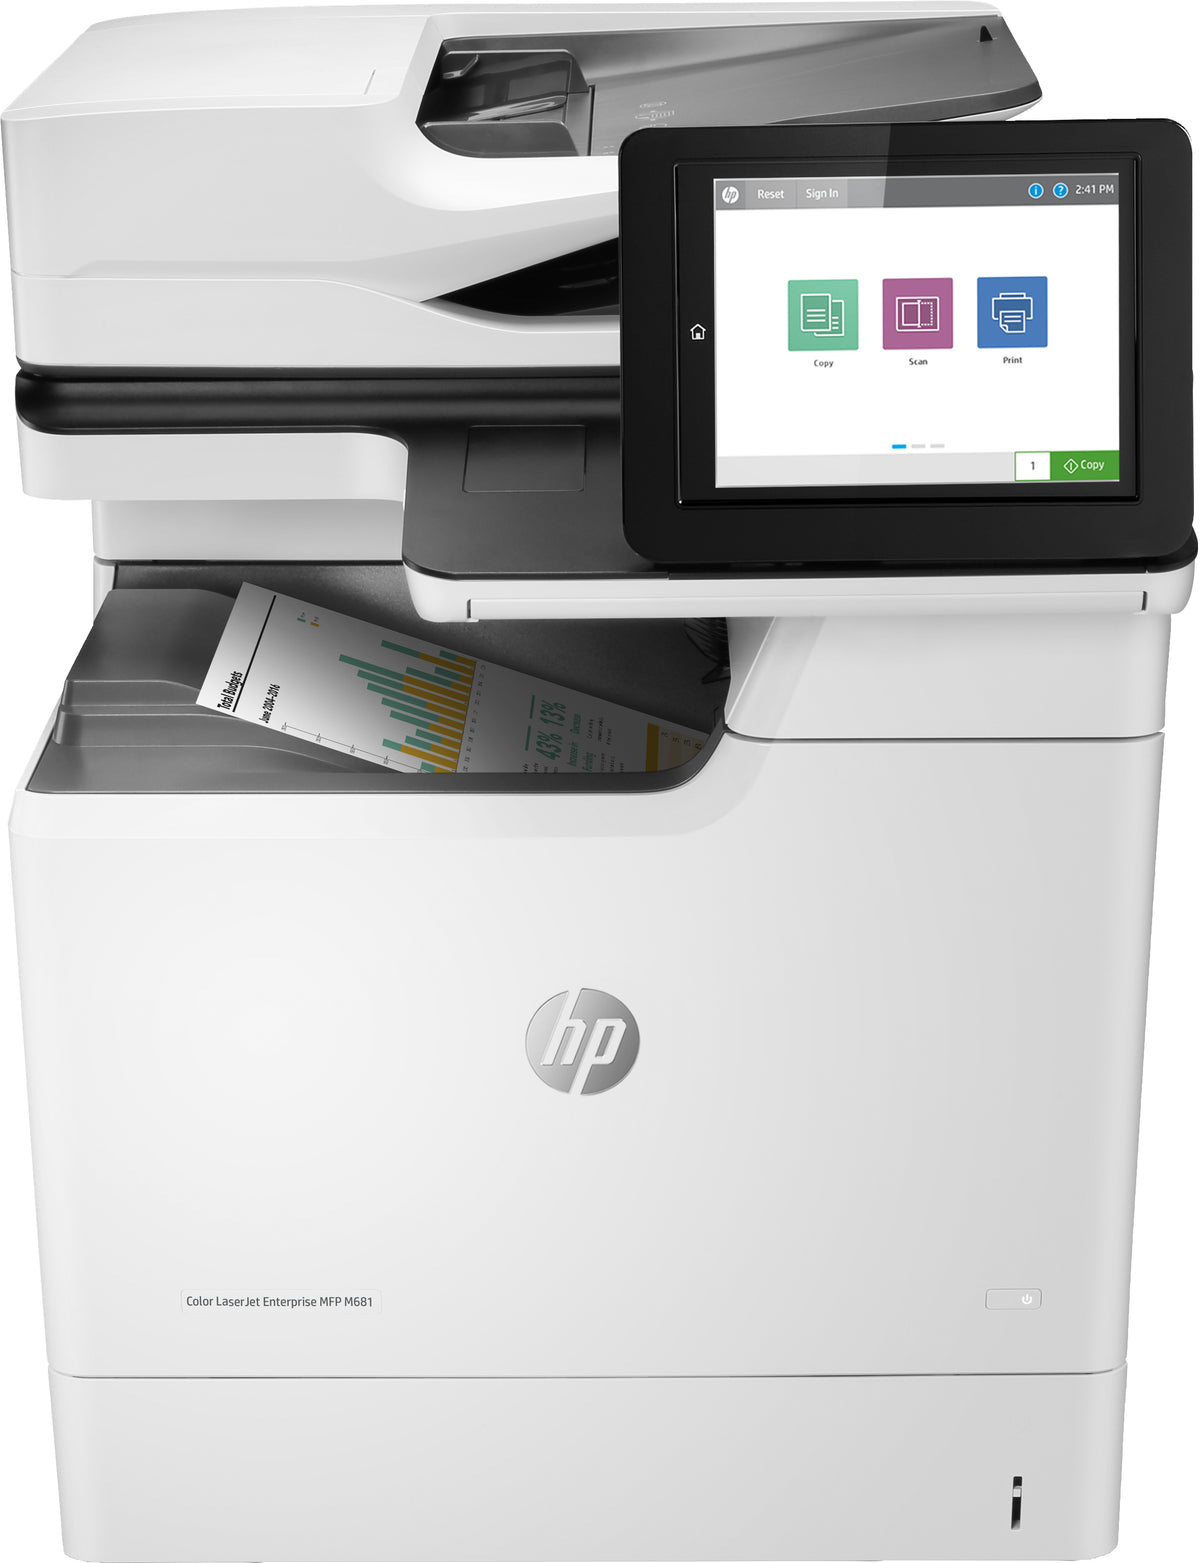 HP Color LaserJet Enterprise MFP M681dh - Multifunction printer - color - laser - 216 x 863 mm (original) - A4/Legal (media) - up to 47 ppm (copy) - up to 47 ppm (print) - 650 sheets - USB 2.0, Gigabit LAN, USB 2.0 host